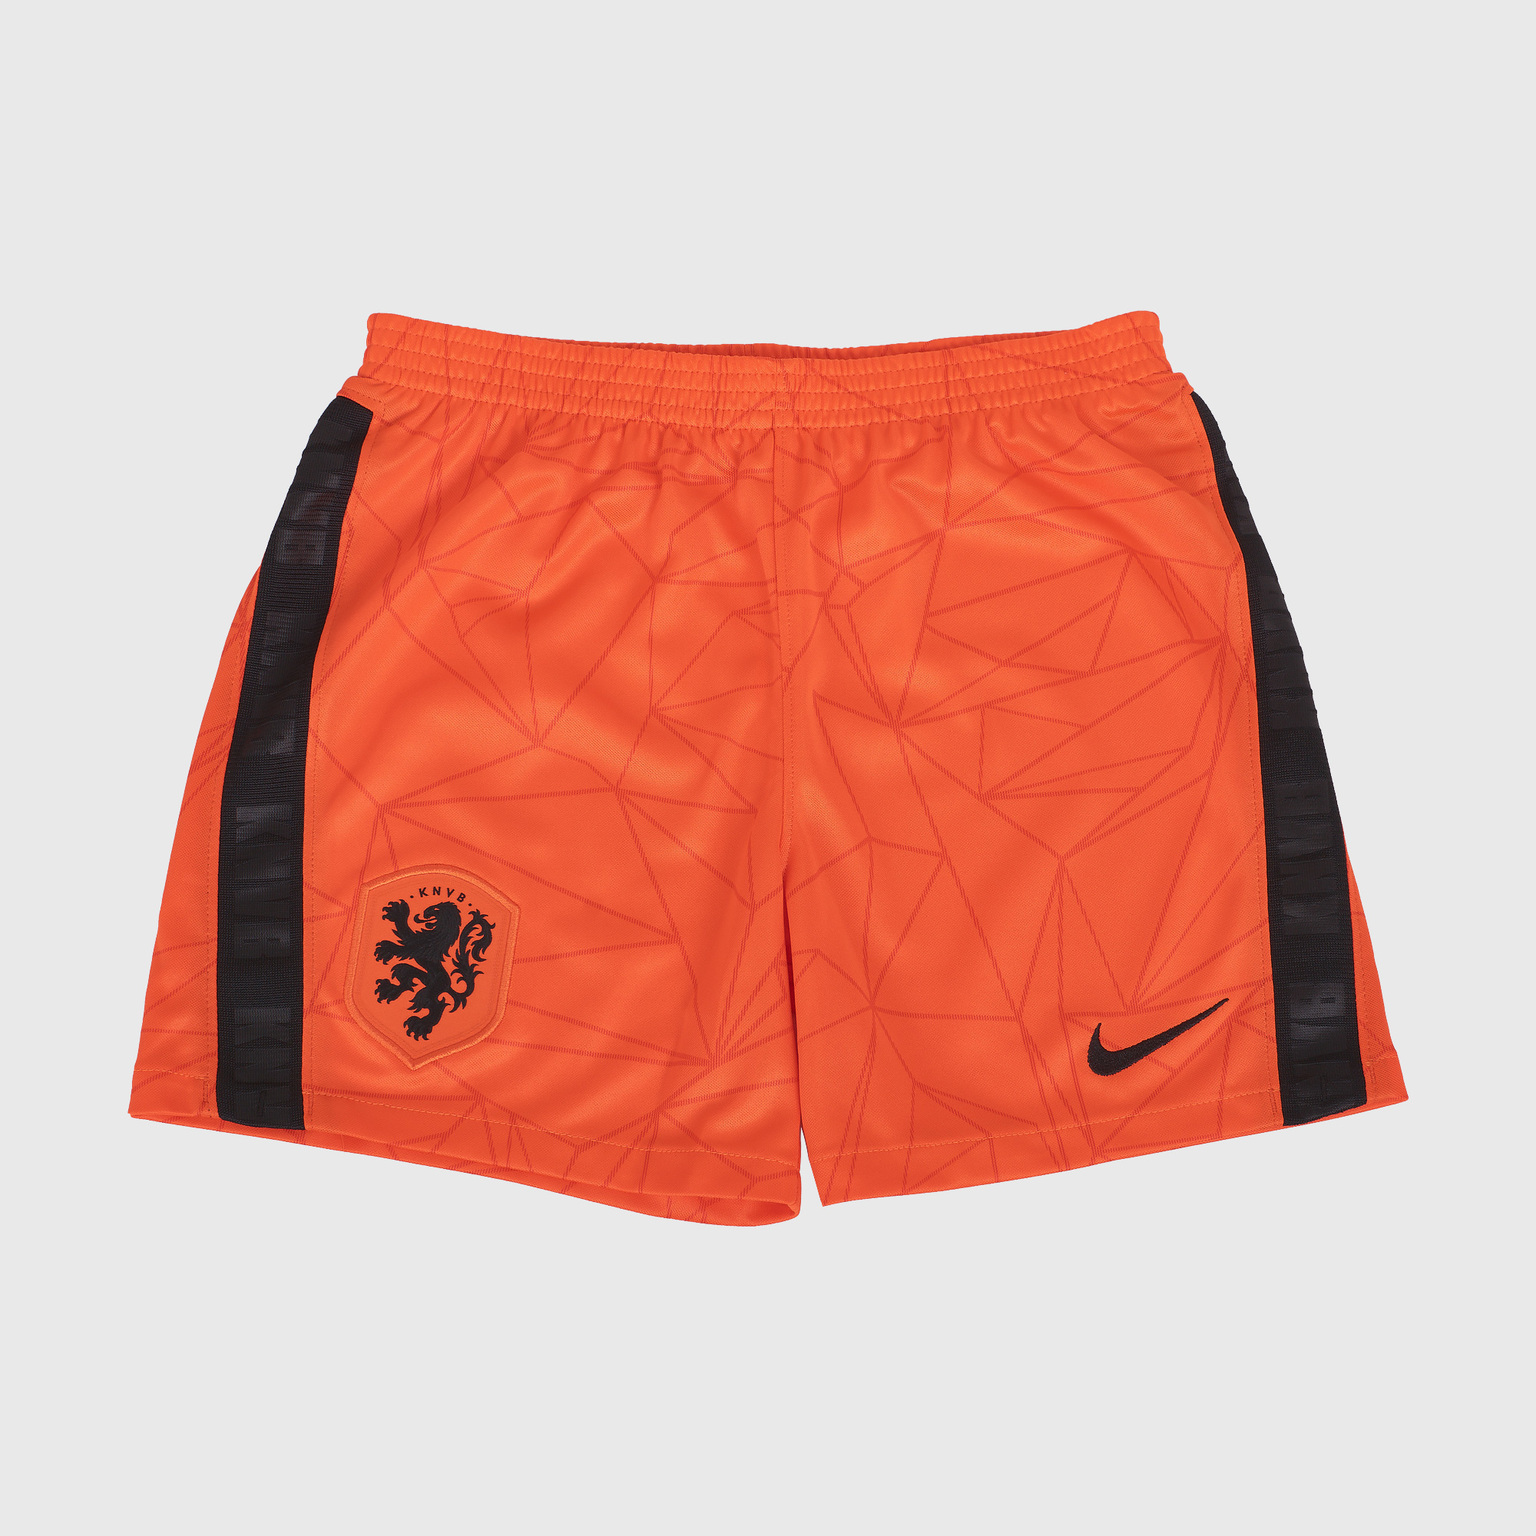 Комплект детской формы Nike сборной Нидерландов сезон 2020/21